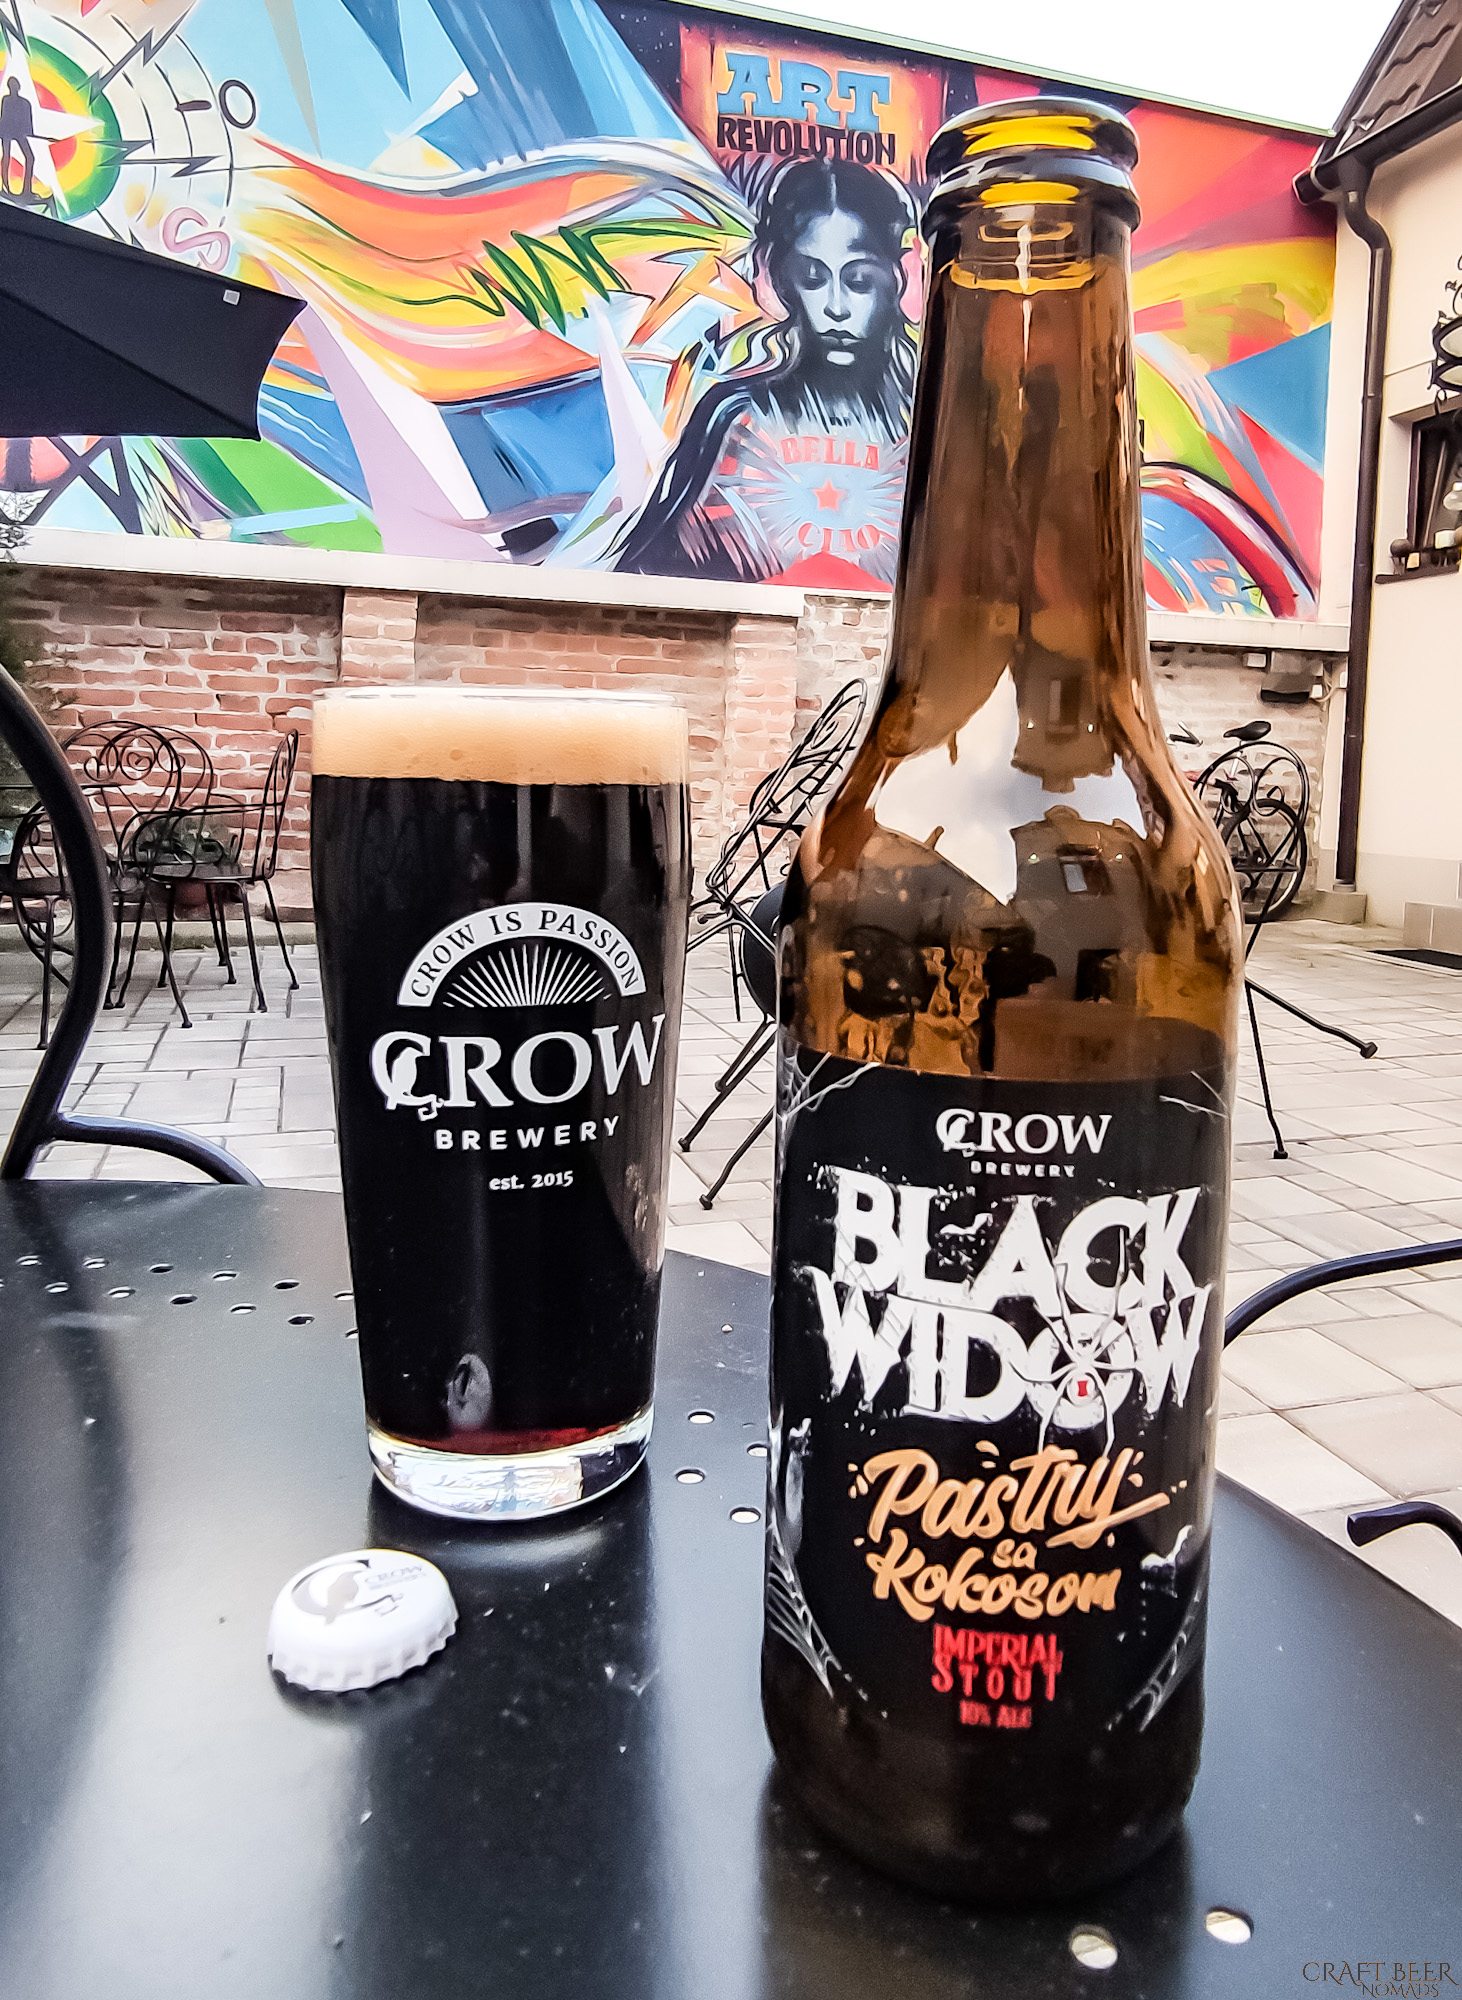 Crow - Black widow